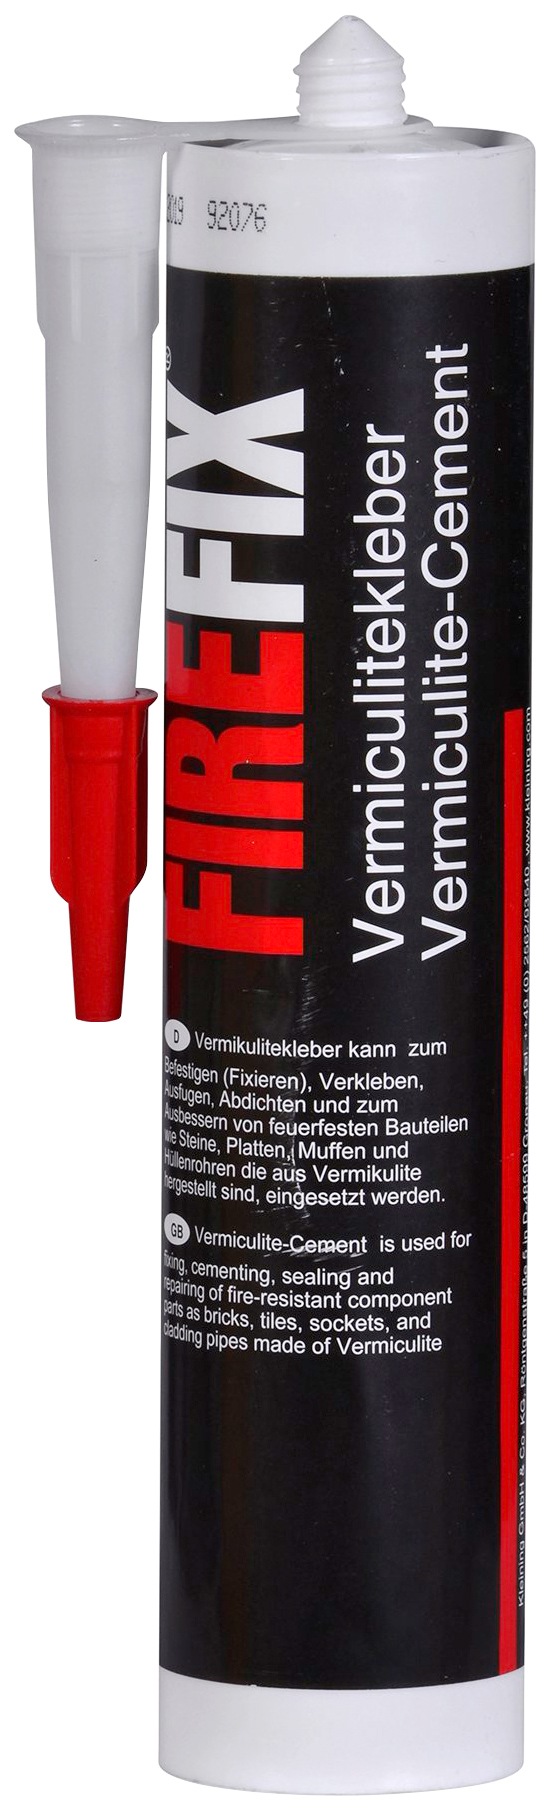 Firefix Klebstoff "Schamottekleber", 310 ml, 310 ml Kartusche